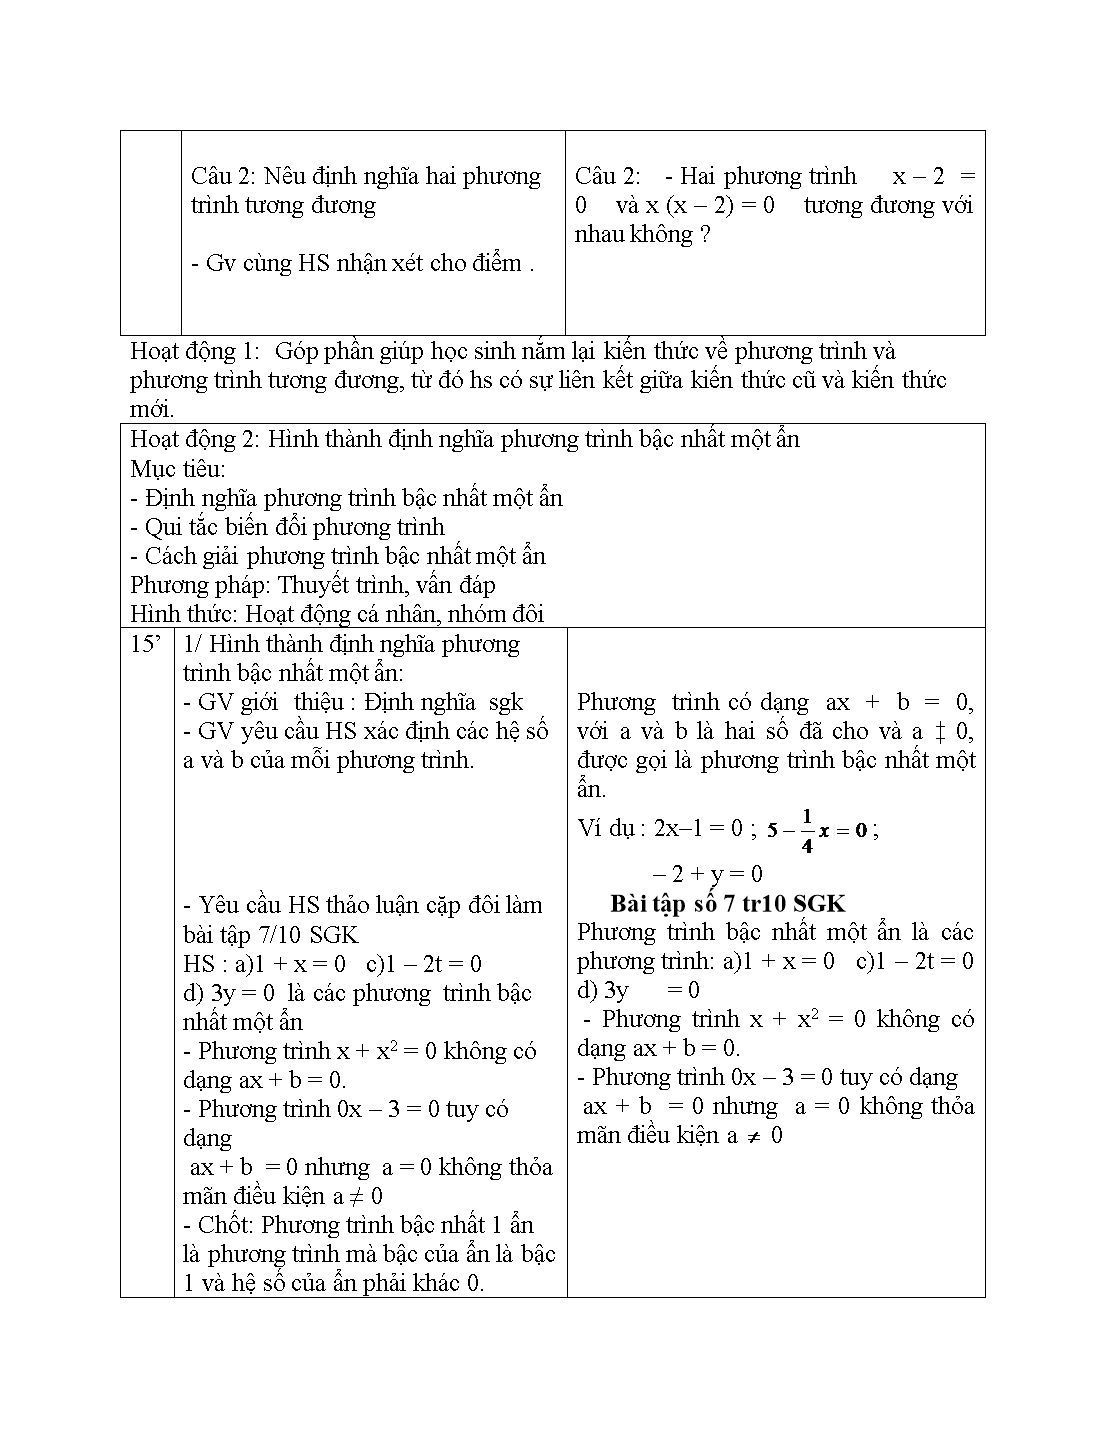 Giáo án môn Toán Lớp 8 (Theo phương pháp mới) - Chủ đề: Phương trình bậc nhất một ẩn và cách giải trang 2